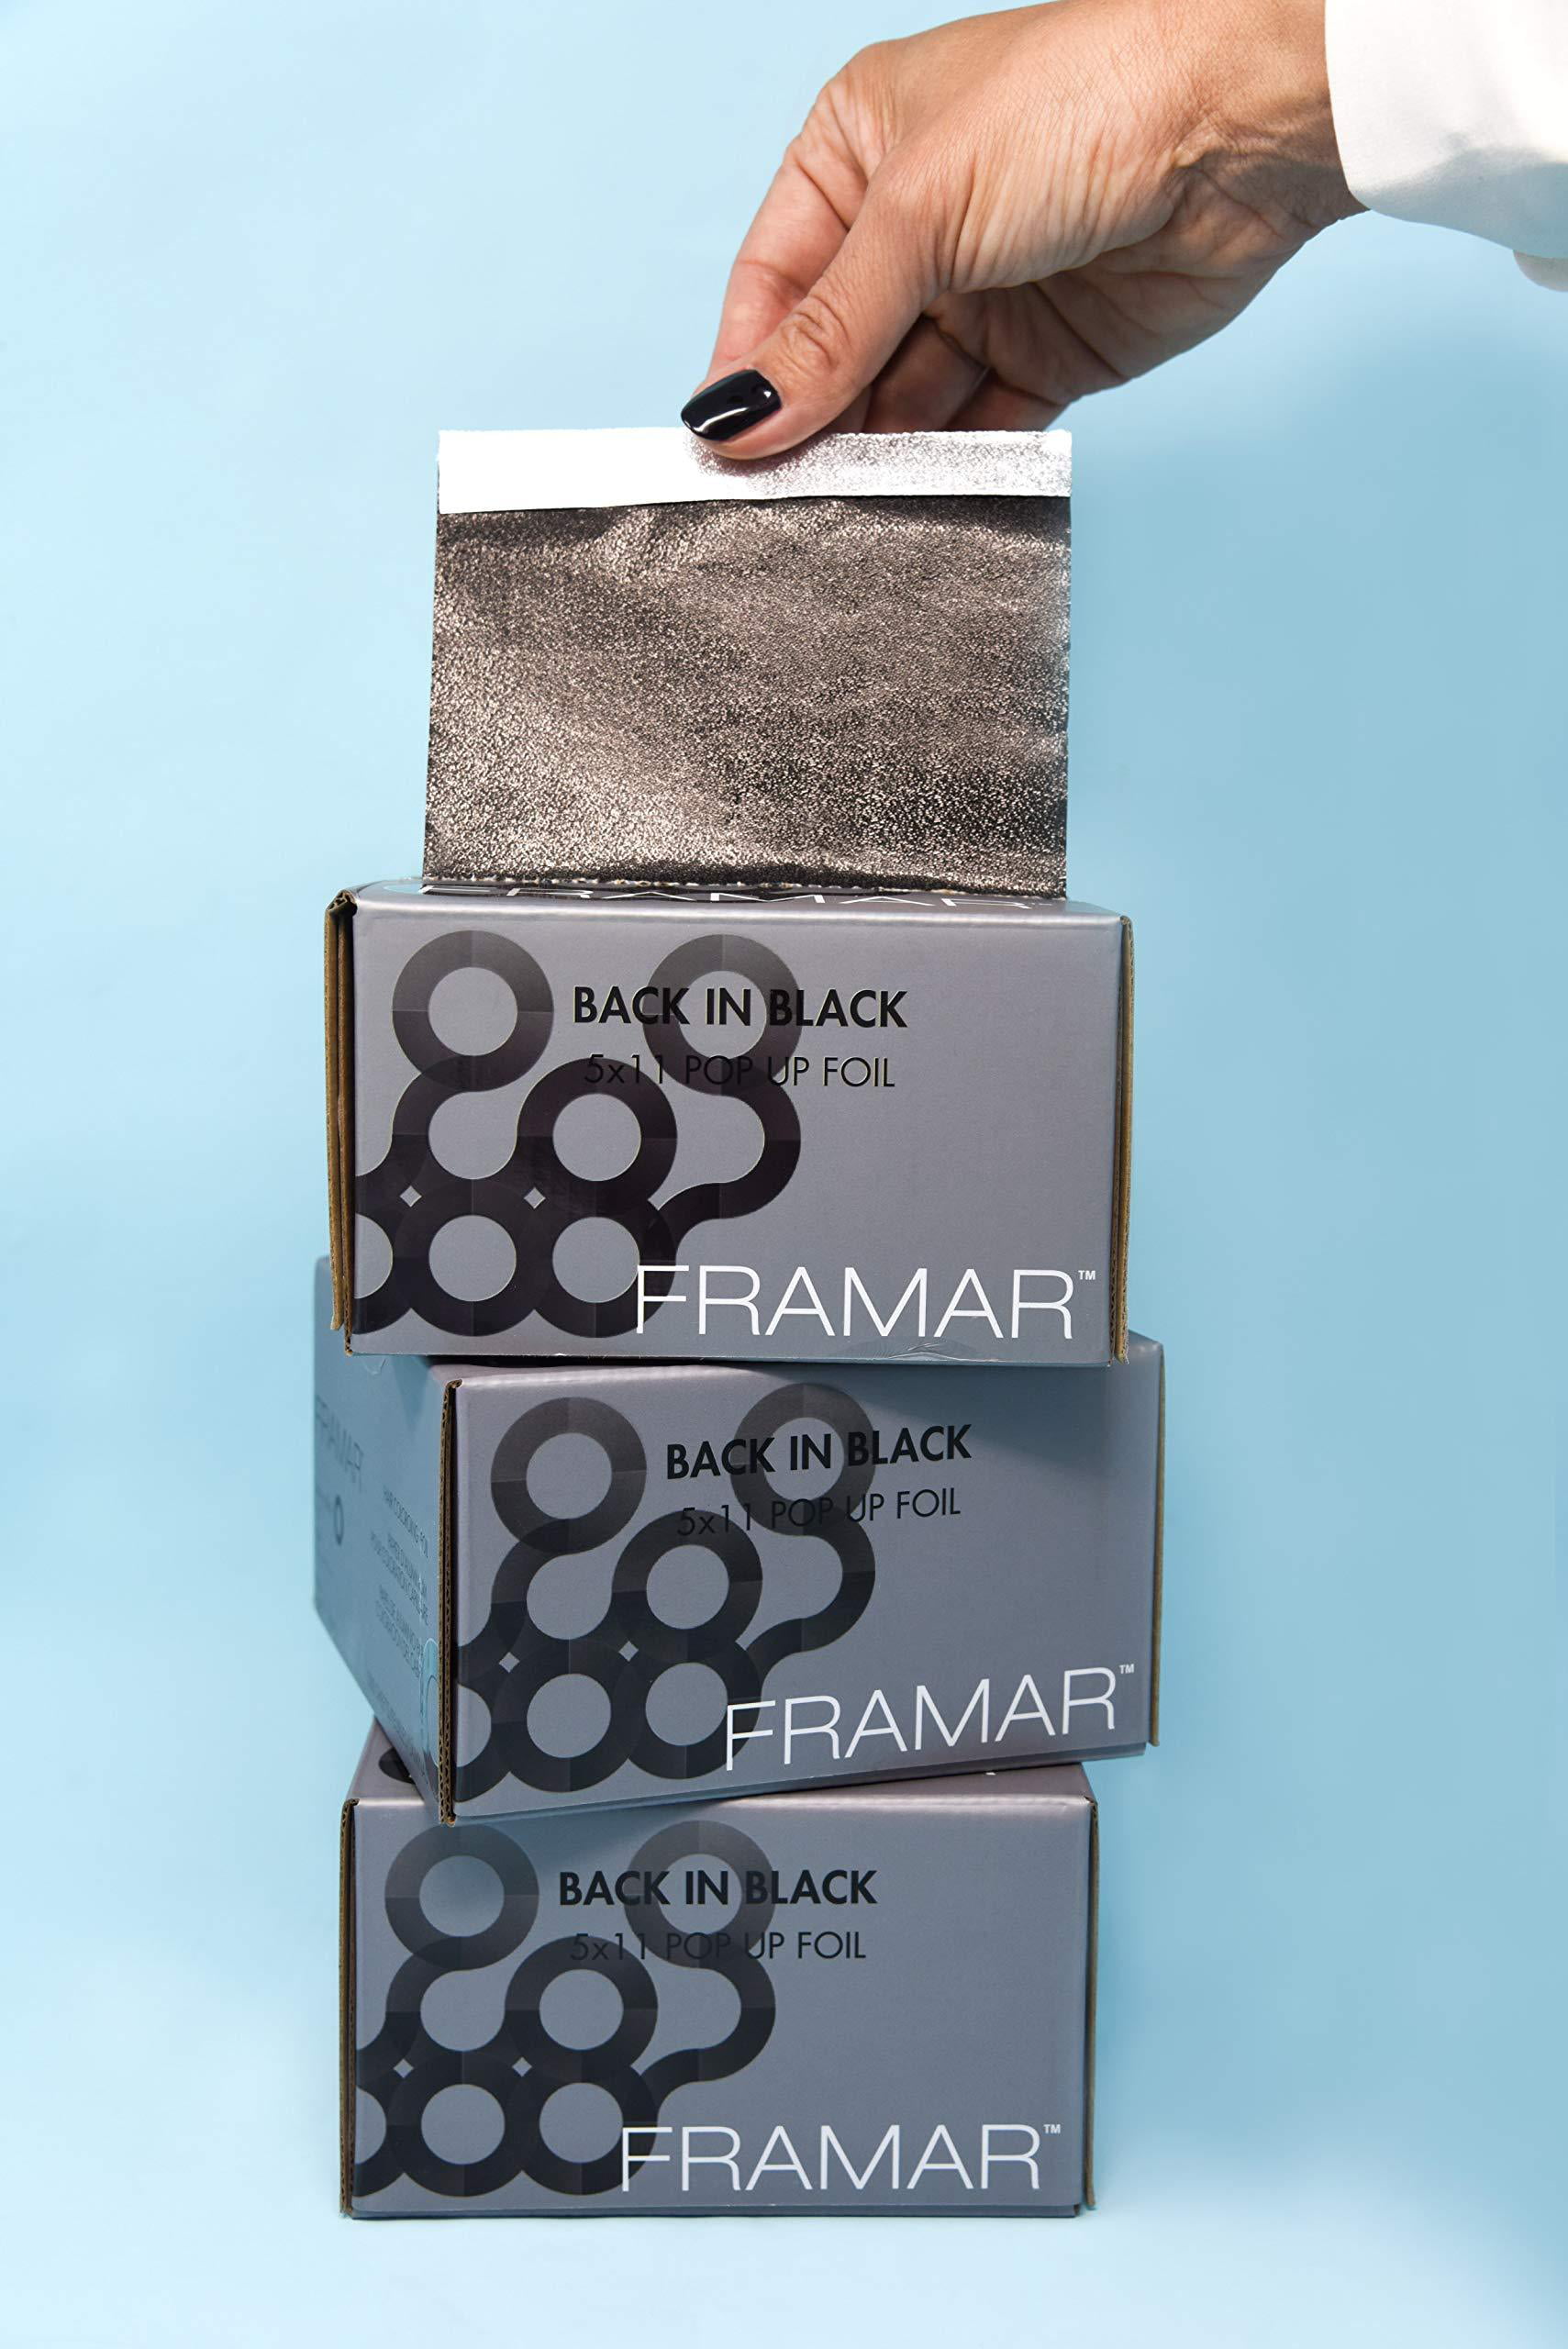 Framar Man Eater Magenta 5x11 Pop Up Foil 500 Sheets – HAIRKOLOR